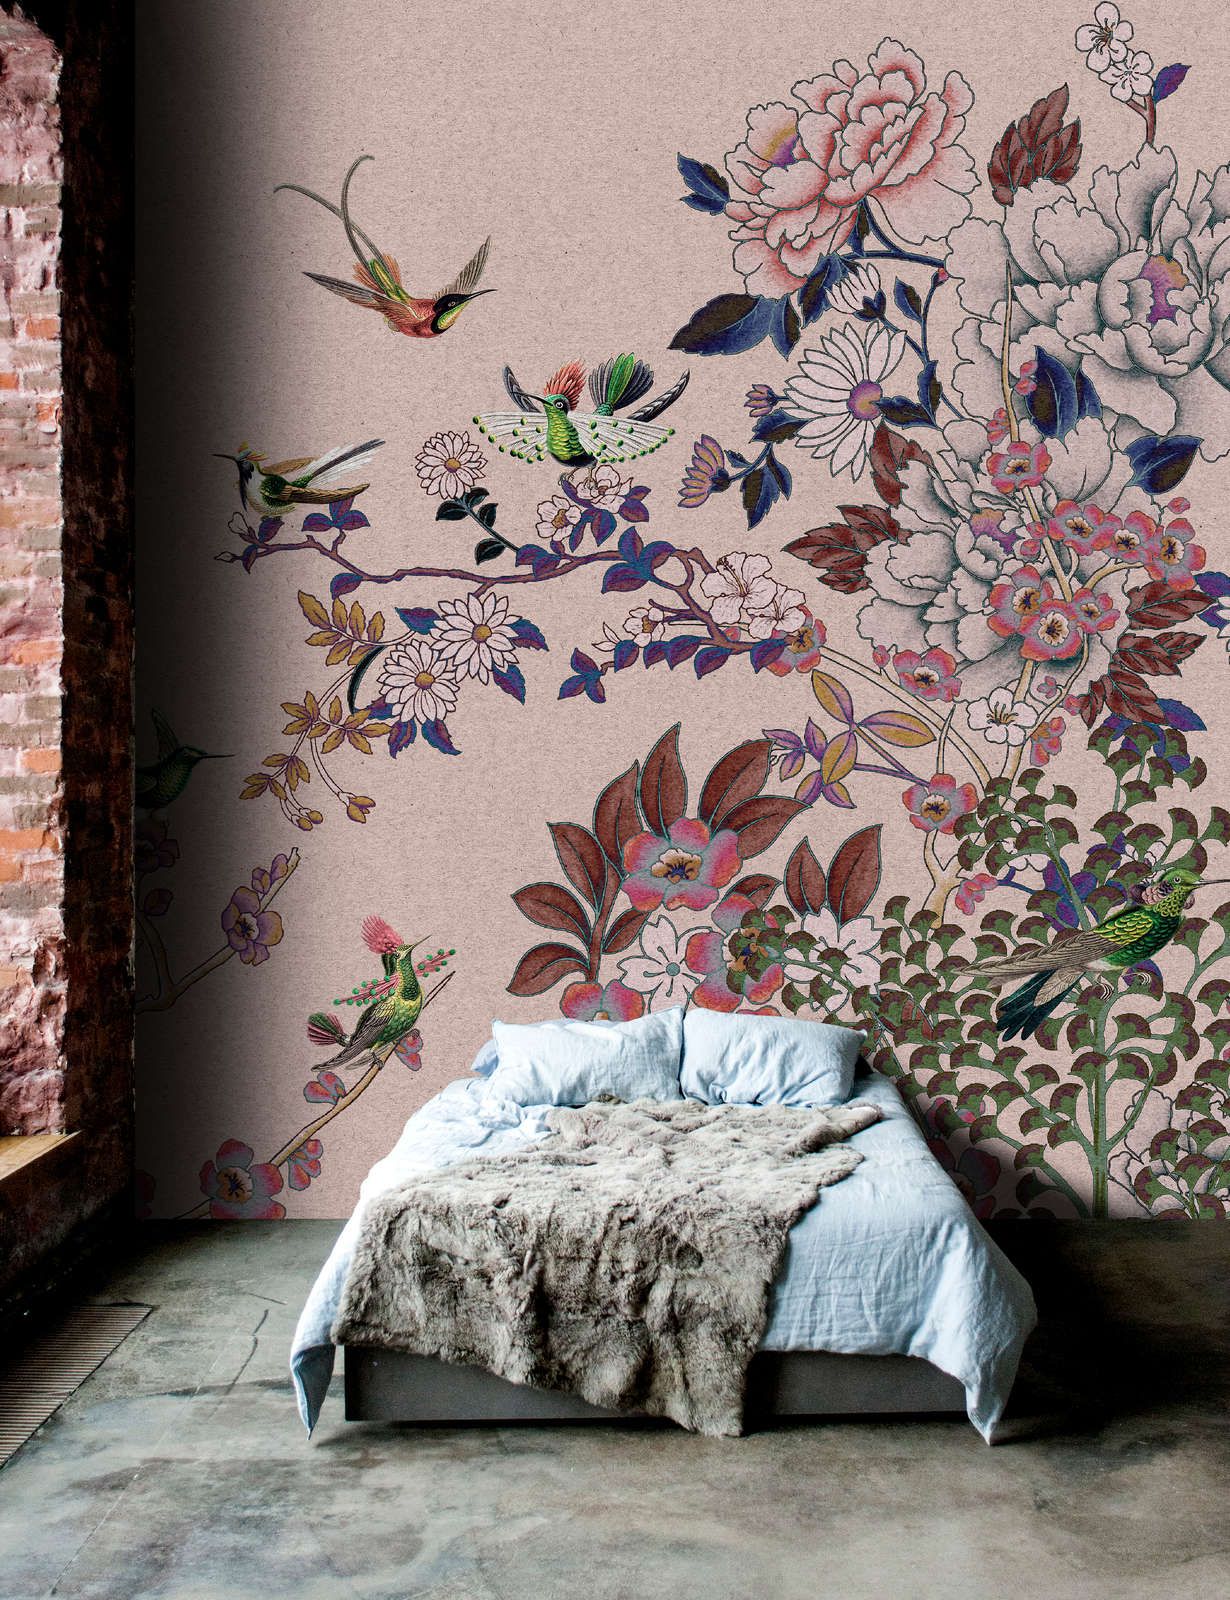             Digital behang »madras 2« - Rooskleurig bloesemmotief met kolibries op kraftpapiertextuur - Mat, glad vliesmateriaal
        